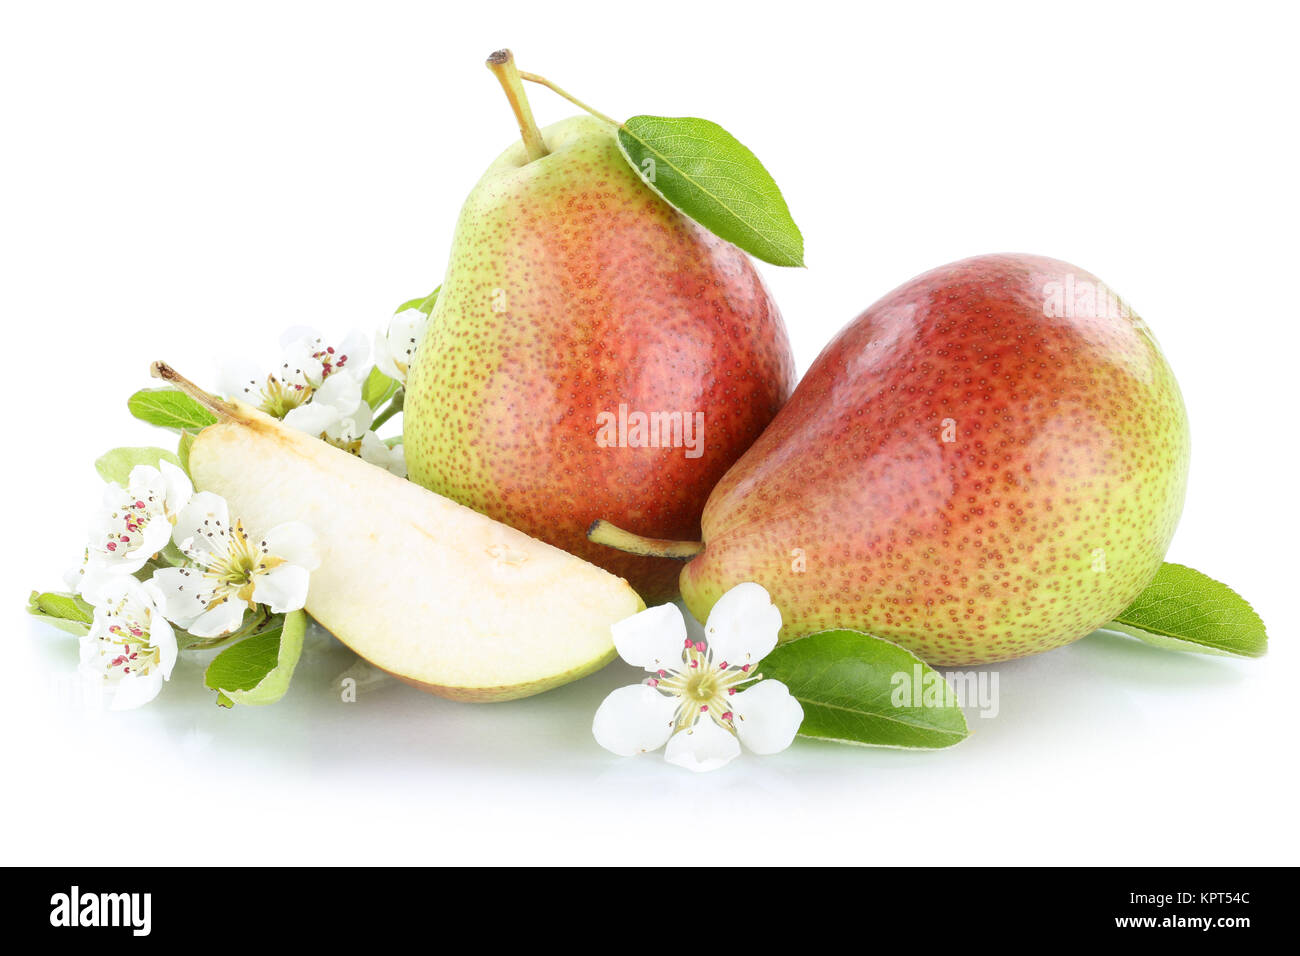 Birnen Birne Frucht frische Früchte Obst Freisteller freigestellt isoliert vor einem weissen Hintergrund Stock Photo